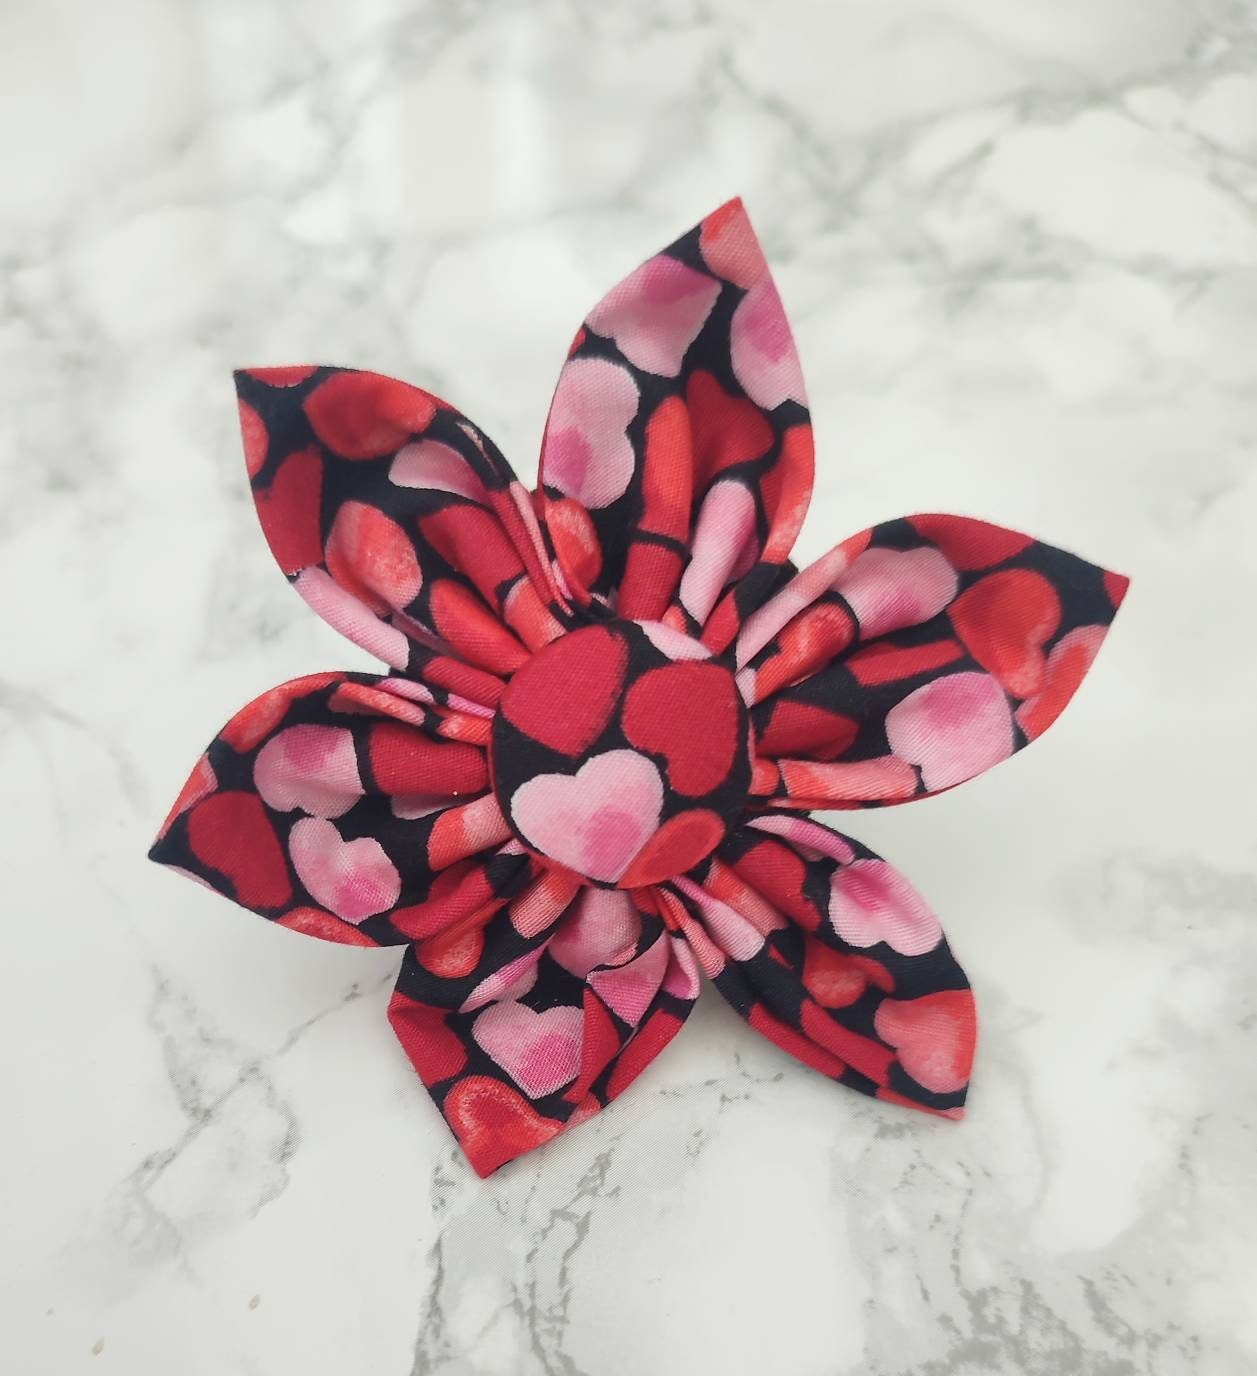 Confetti hearts dog collar flower accessory